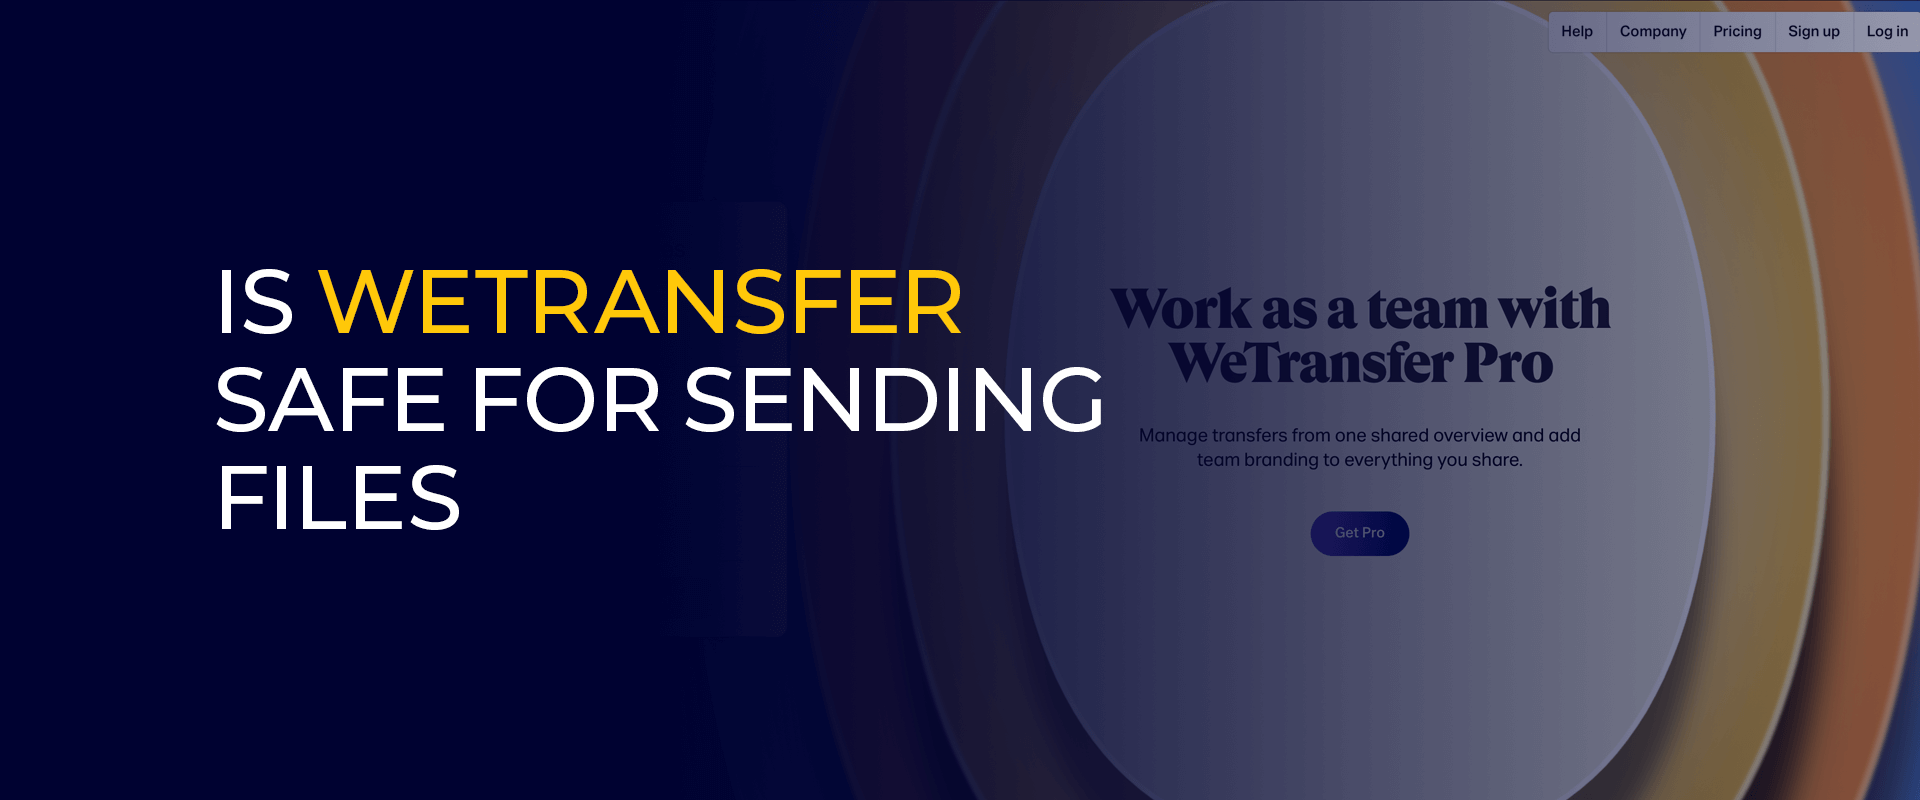 WeTransfer dosya göndermek için güvenli midir?